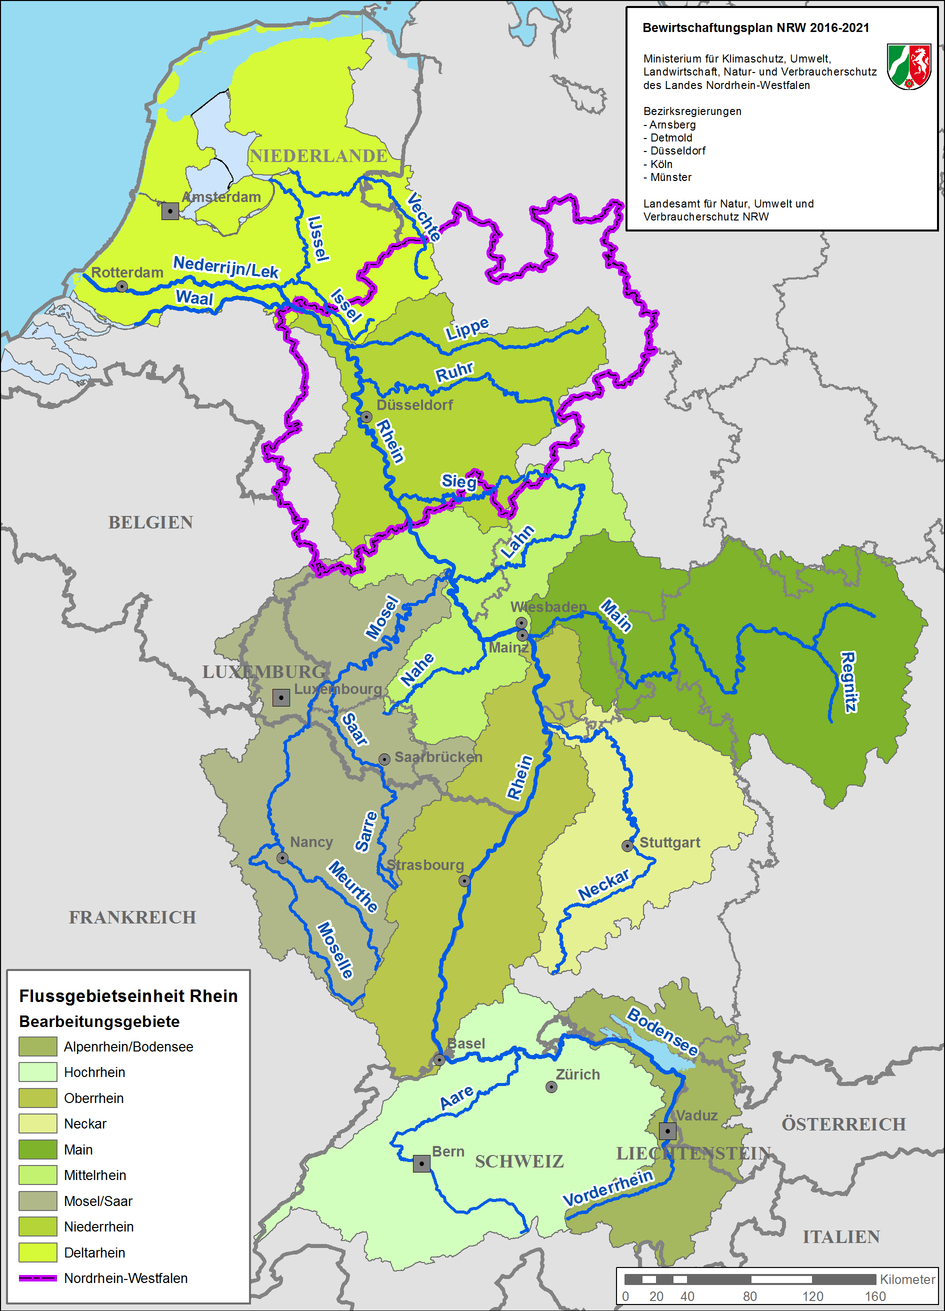 Eine Karte zeigt die Bearbeitungsgebiete der FGE Rhein von der Nordseeküste in den Niederlanden bis zur Schweiz durch unterschiedliche Grüntöne an. Von Nord nach Süd heißen die Bearbeitungsgebiete: Deltarhein, Niederrhein (dieses Gebiet umfasst größtenteils NRW), Mosel/Saar, Mittelrhein, Main, Neckar, Oberrhein, Hochrhein und Alpenrhein/Bodensee.